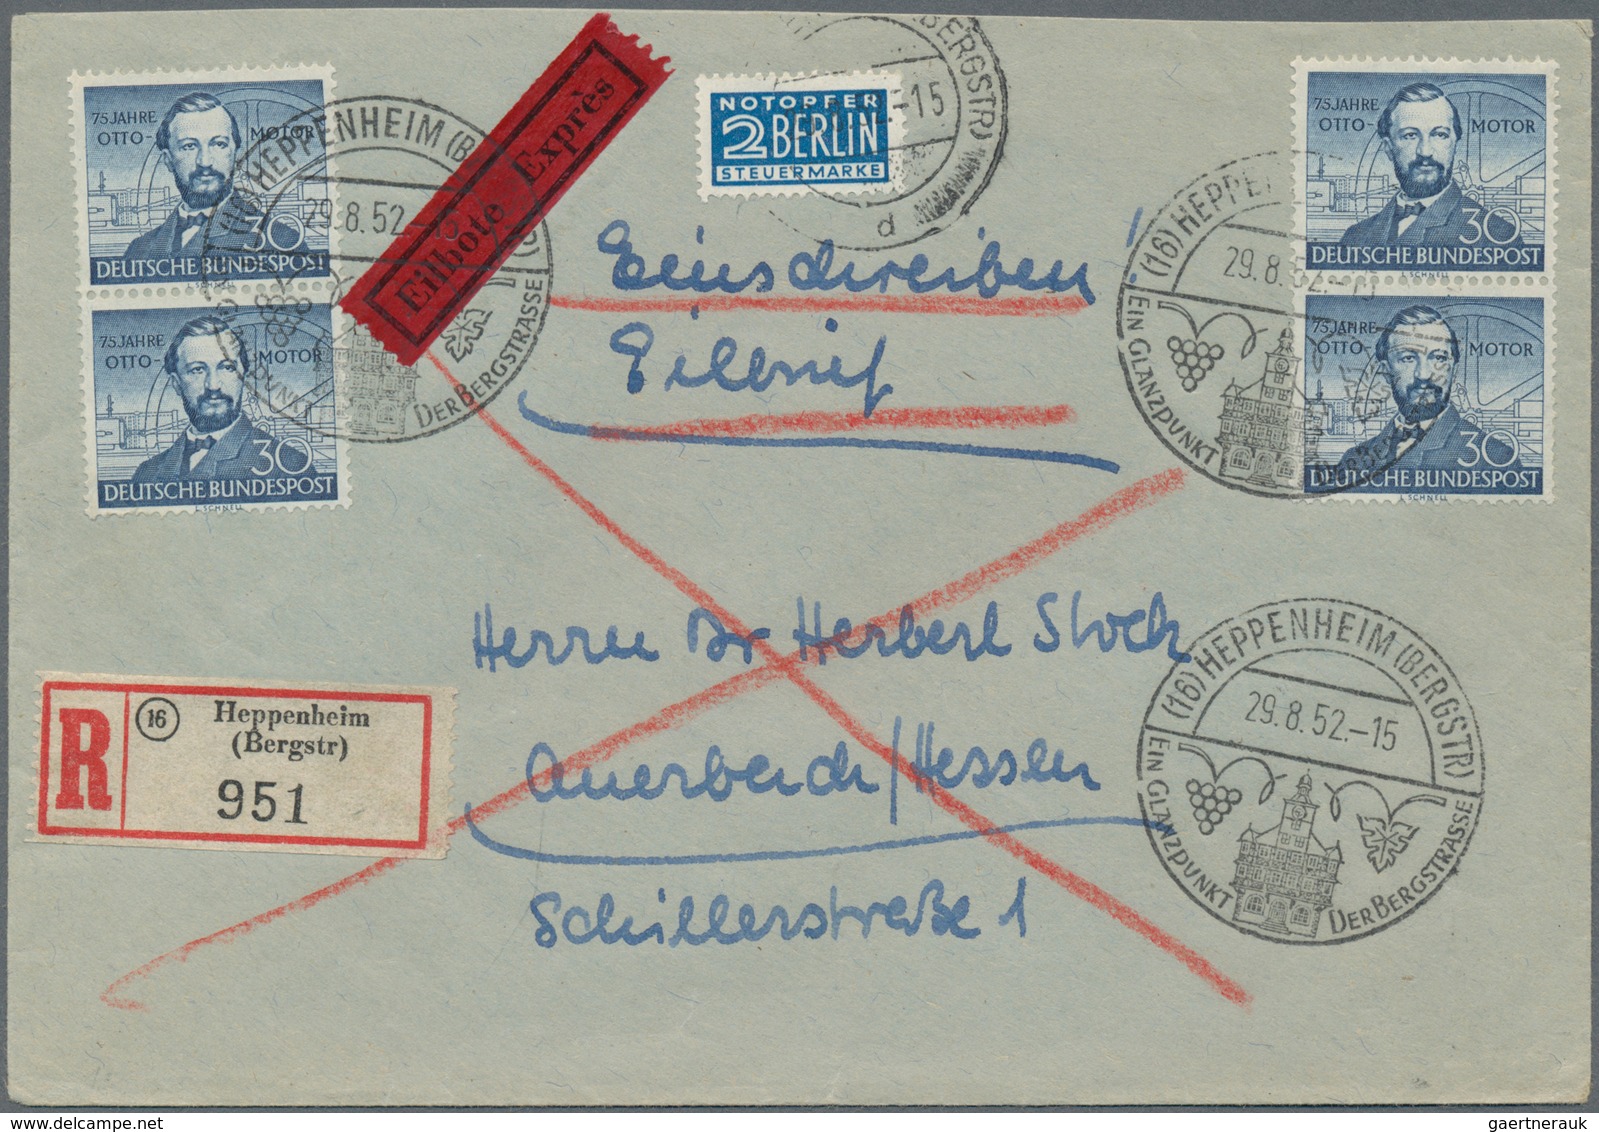 Bundesrepublik Deutschland: 1949/2012, sehr gehaltvolle Spezialsammlung mit Schwerpunkt Einzel- und